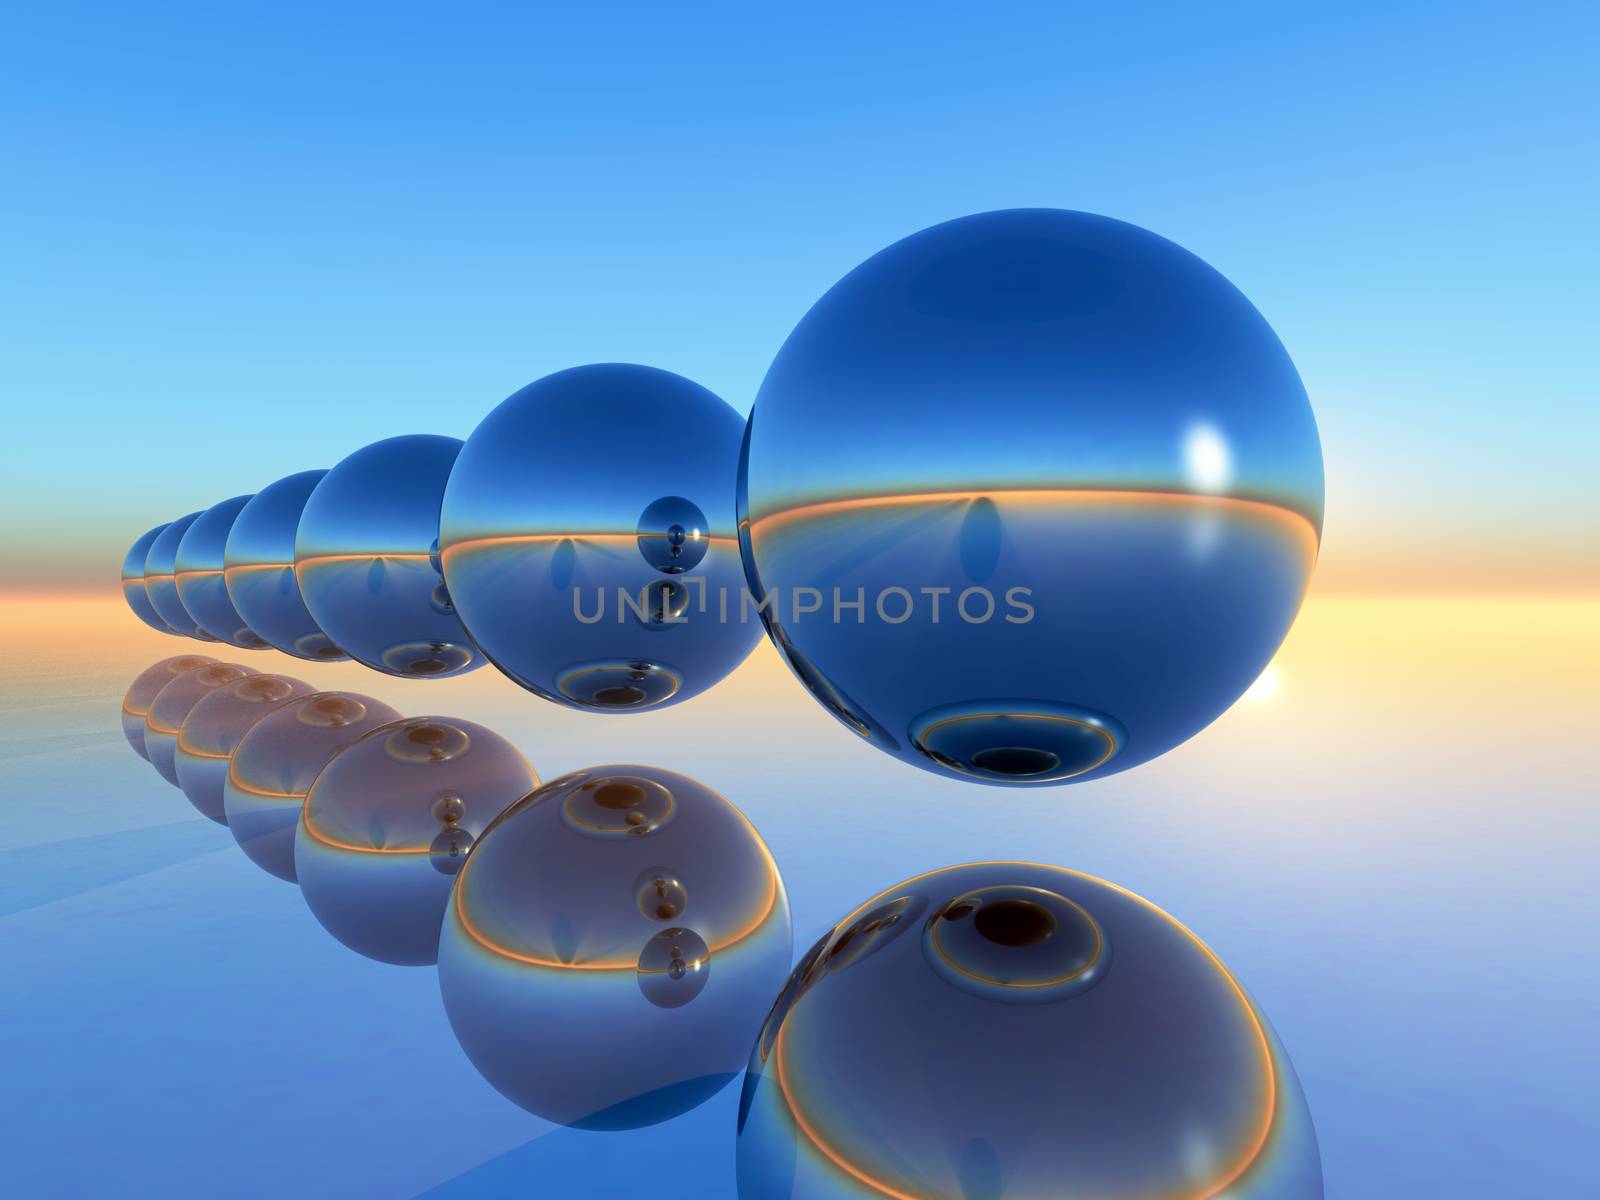 range of sphere in 3D rendering